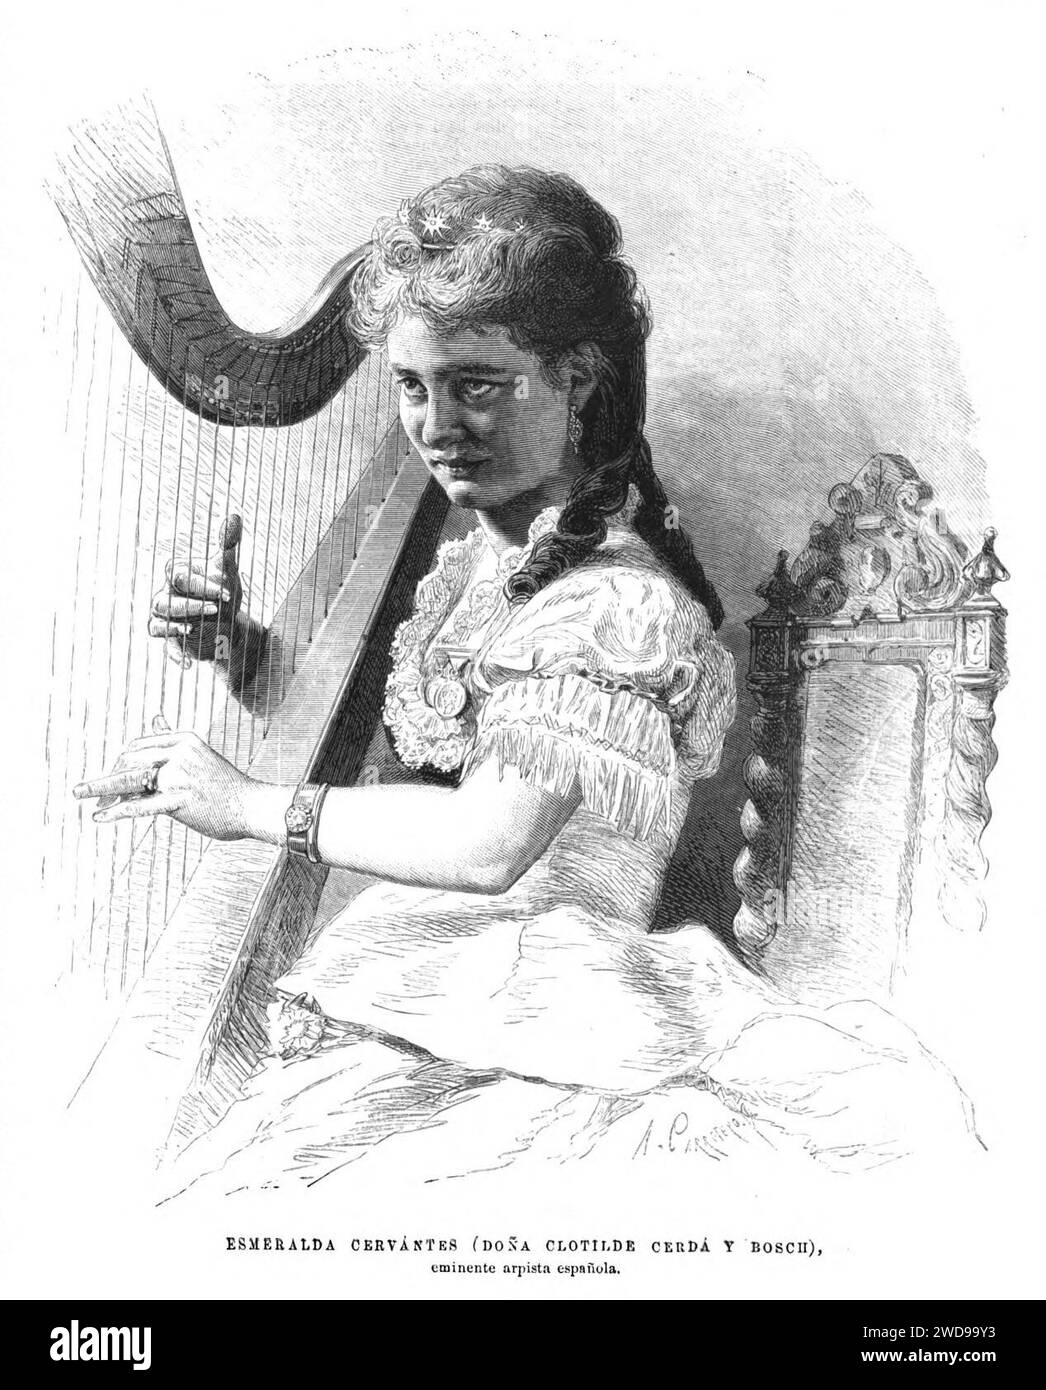 1876-11-30, La Ilustración Española y Americana, Esmeralda Cervantes (Doña Clotilde Cerdá y Bosch) (cropped). Stock Photo